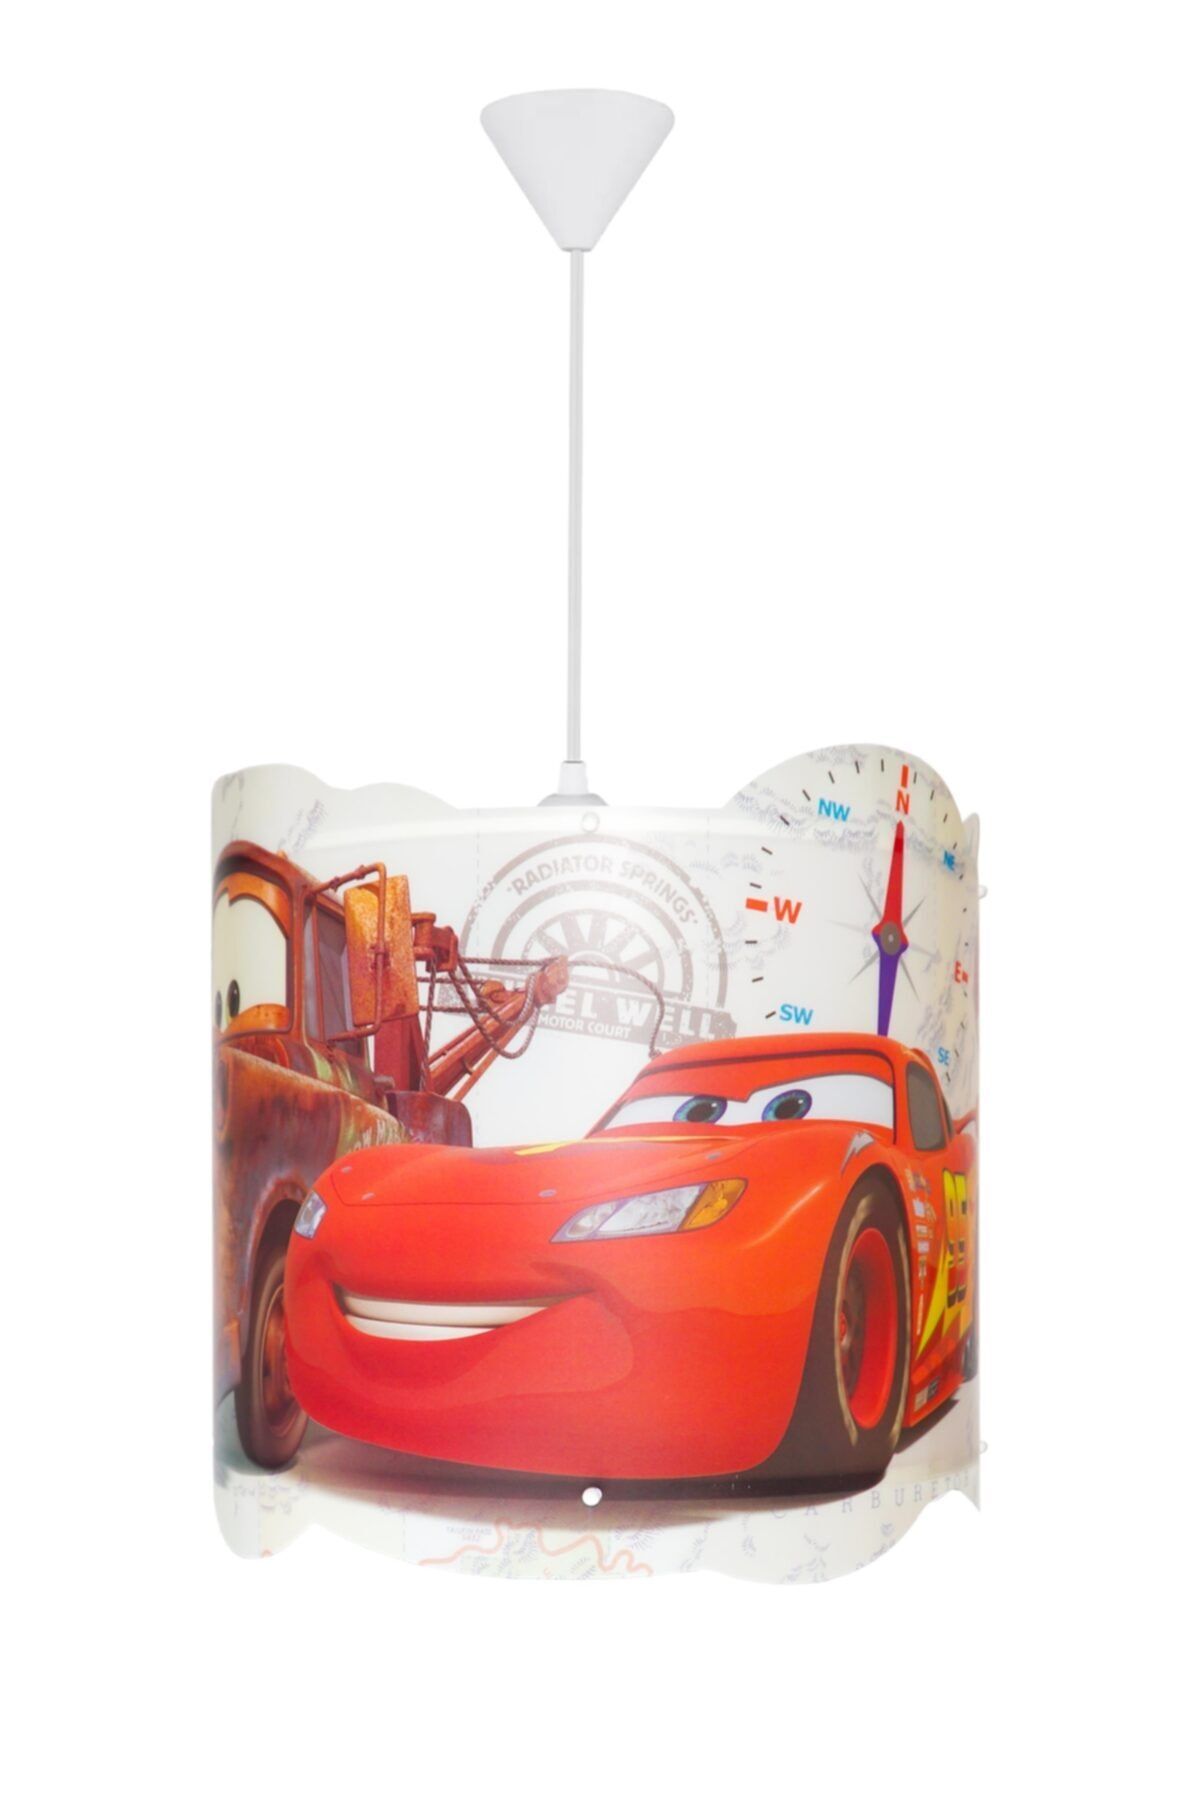 DİSNEY Pixar Cars Dekoratif Tavan Lambası